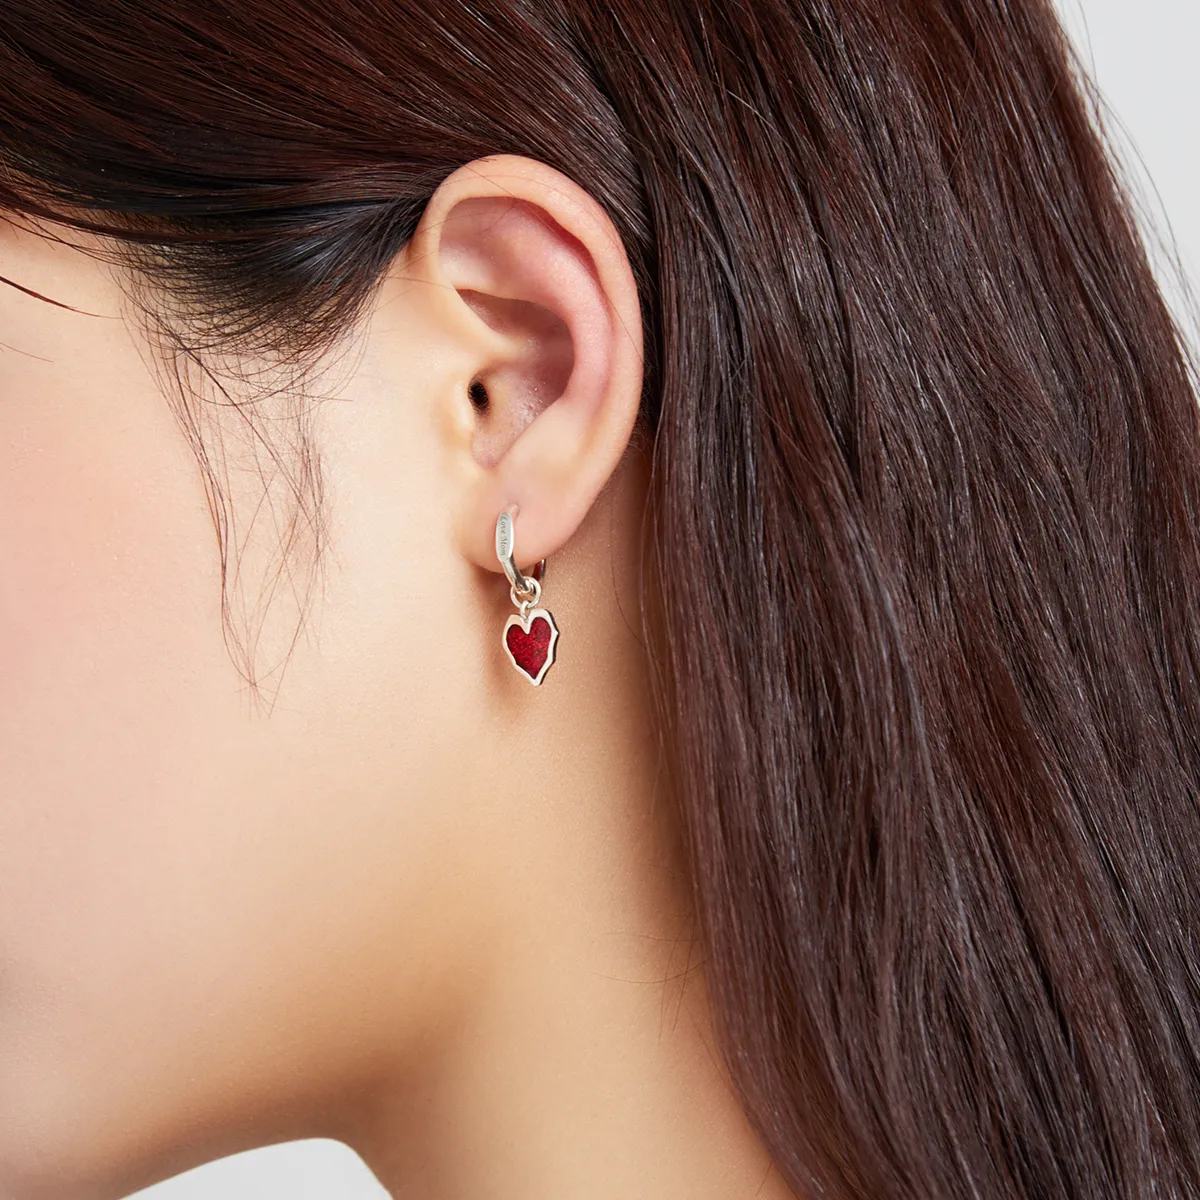 Pandora Style Close Lover Hoop Earrings - BSE484